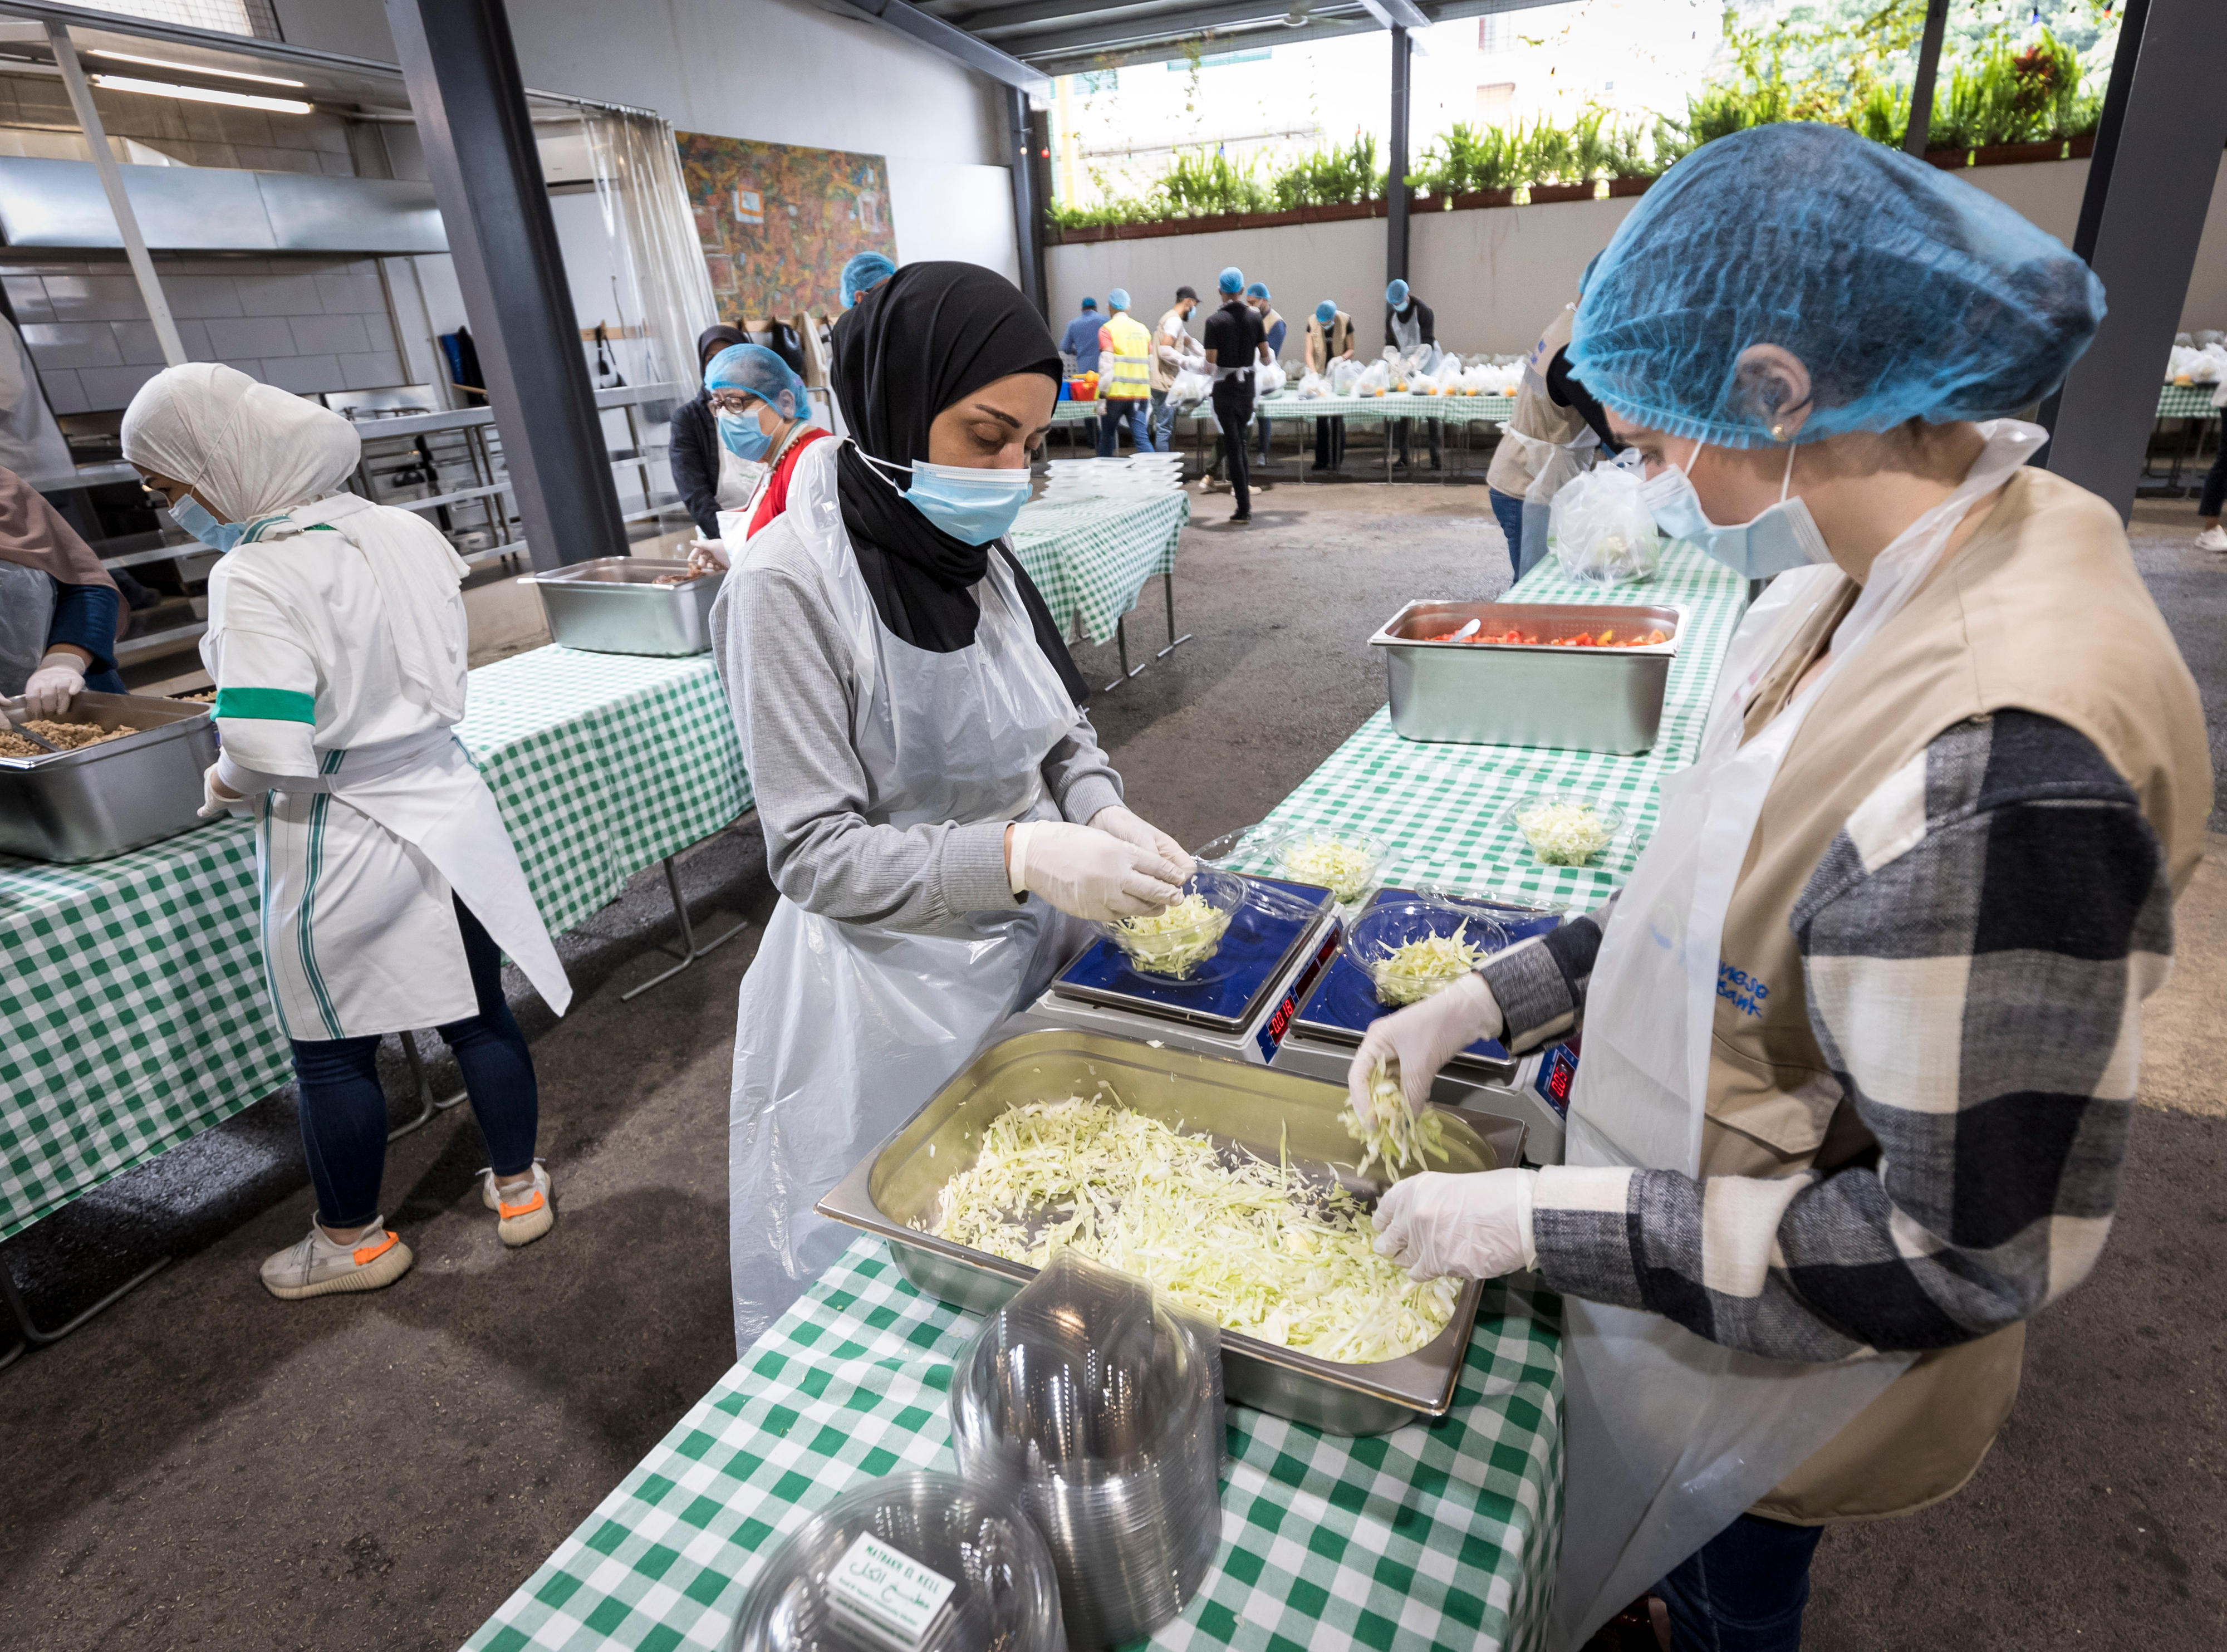 In der Gemeindeküche des Projekts "Matbakh el Kell" ("Eine Küche für alle") werden Mahlzeiten für Menschen zubereitet, die von der Explosion 2020 im Beiruter Hafen besonders betroffen sind.